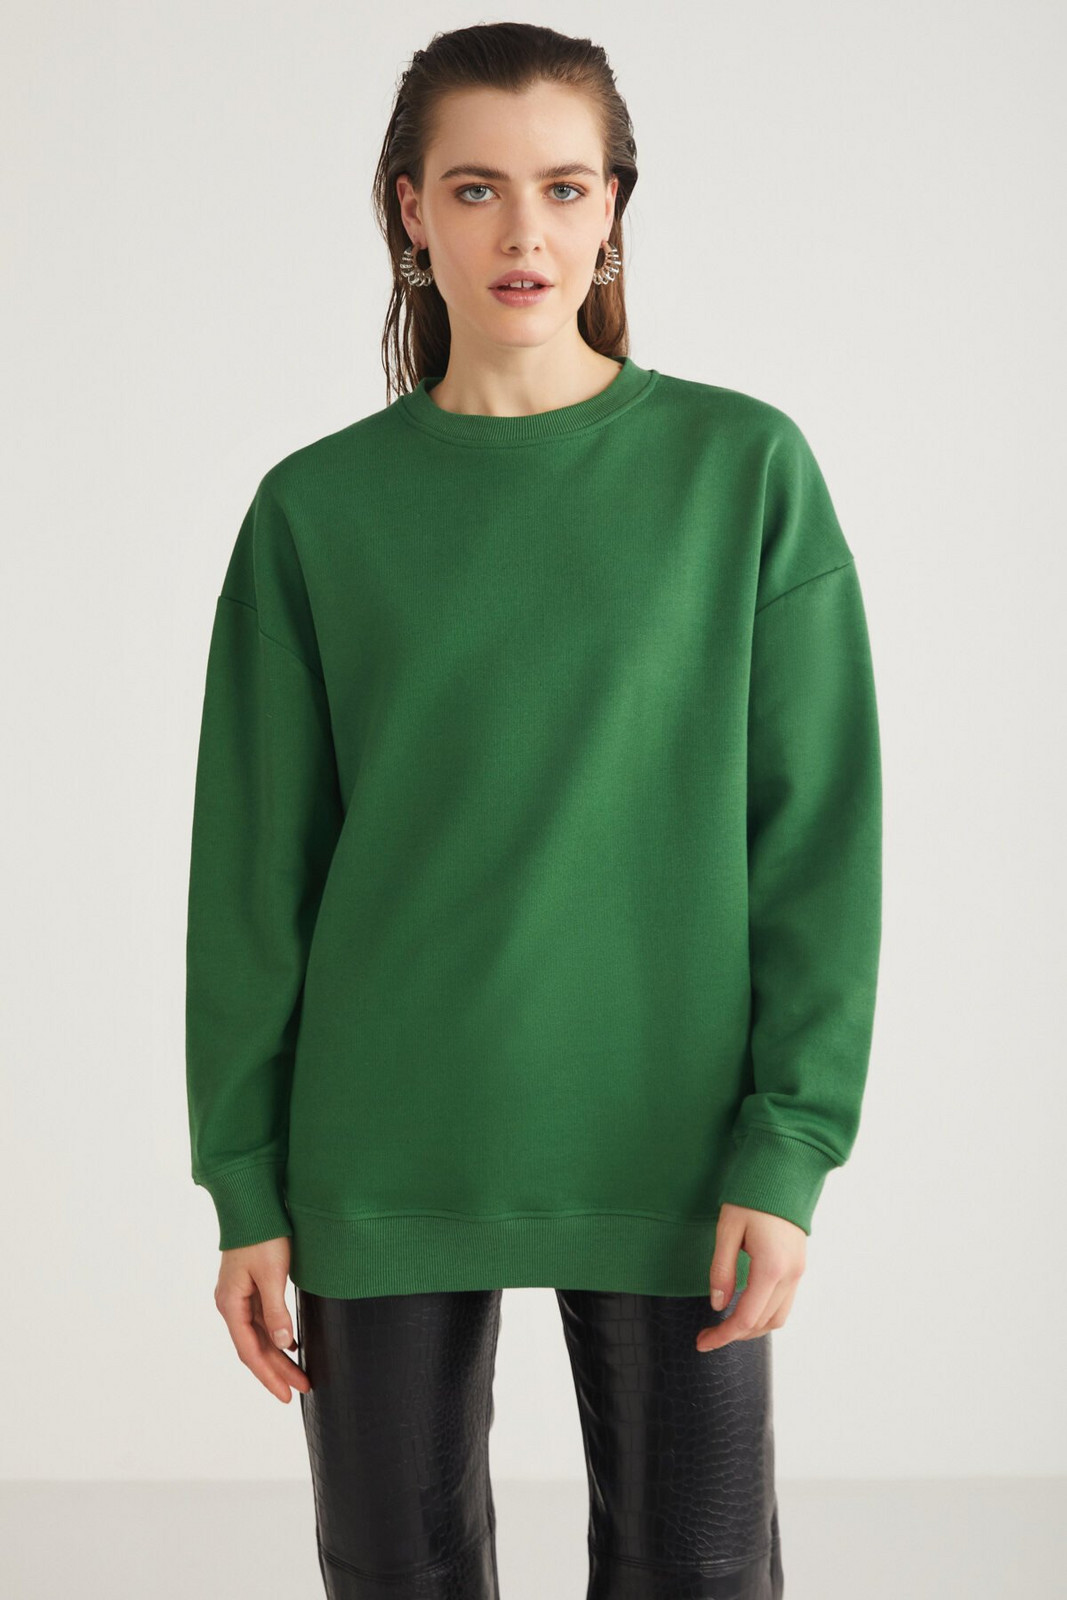 GRIMELANGE Allys Women's Crew Neck Oversize Basic Green Sweatshirt